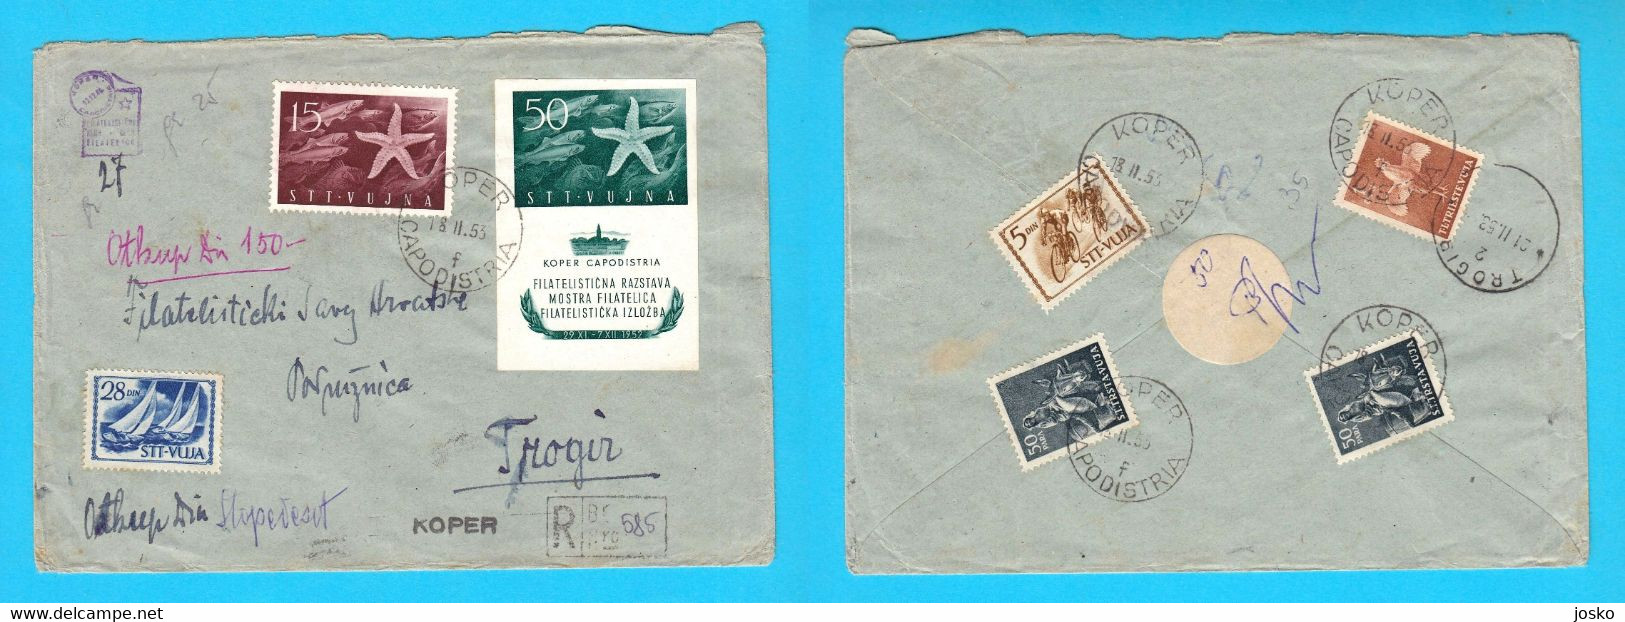 TRIESTE ZONA B STT VUJNA VUJA Registered Letter Travelled 1953 Koper Capodistria Yugoslavia Slovenia Istria Italy Italia - Marcophilia